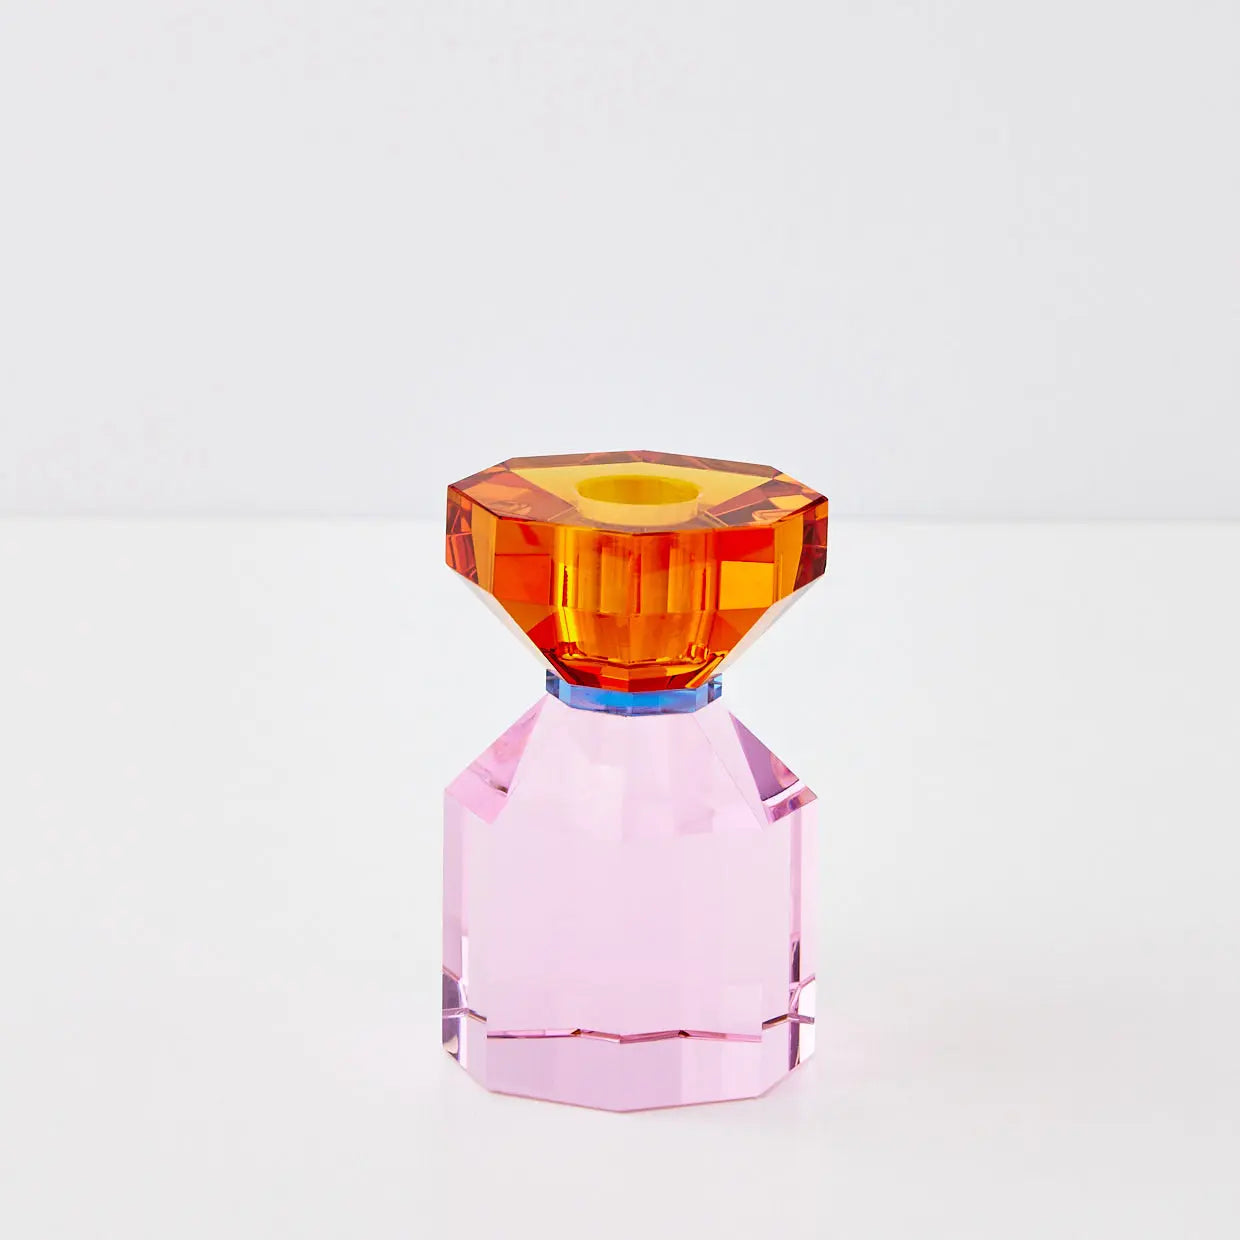 Bevel Crystal Taper Candle Holder Amber Pink - GigiandTom